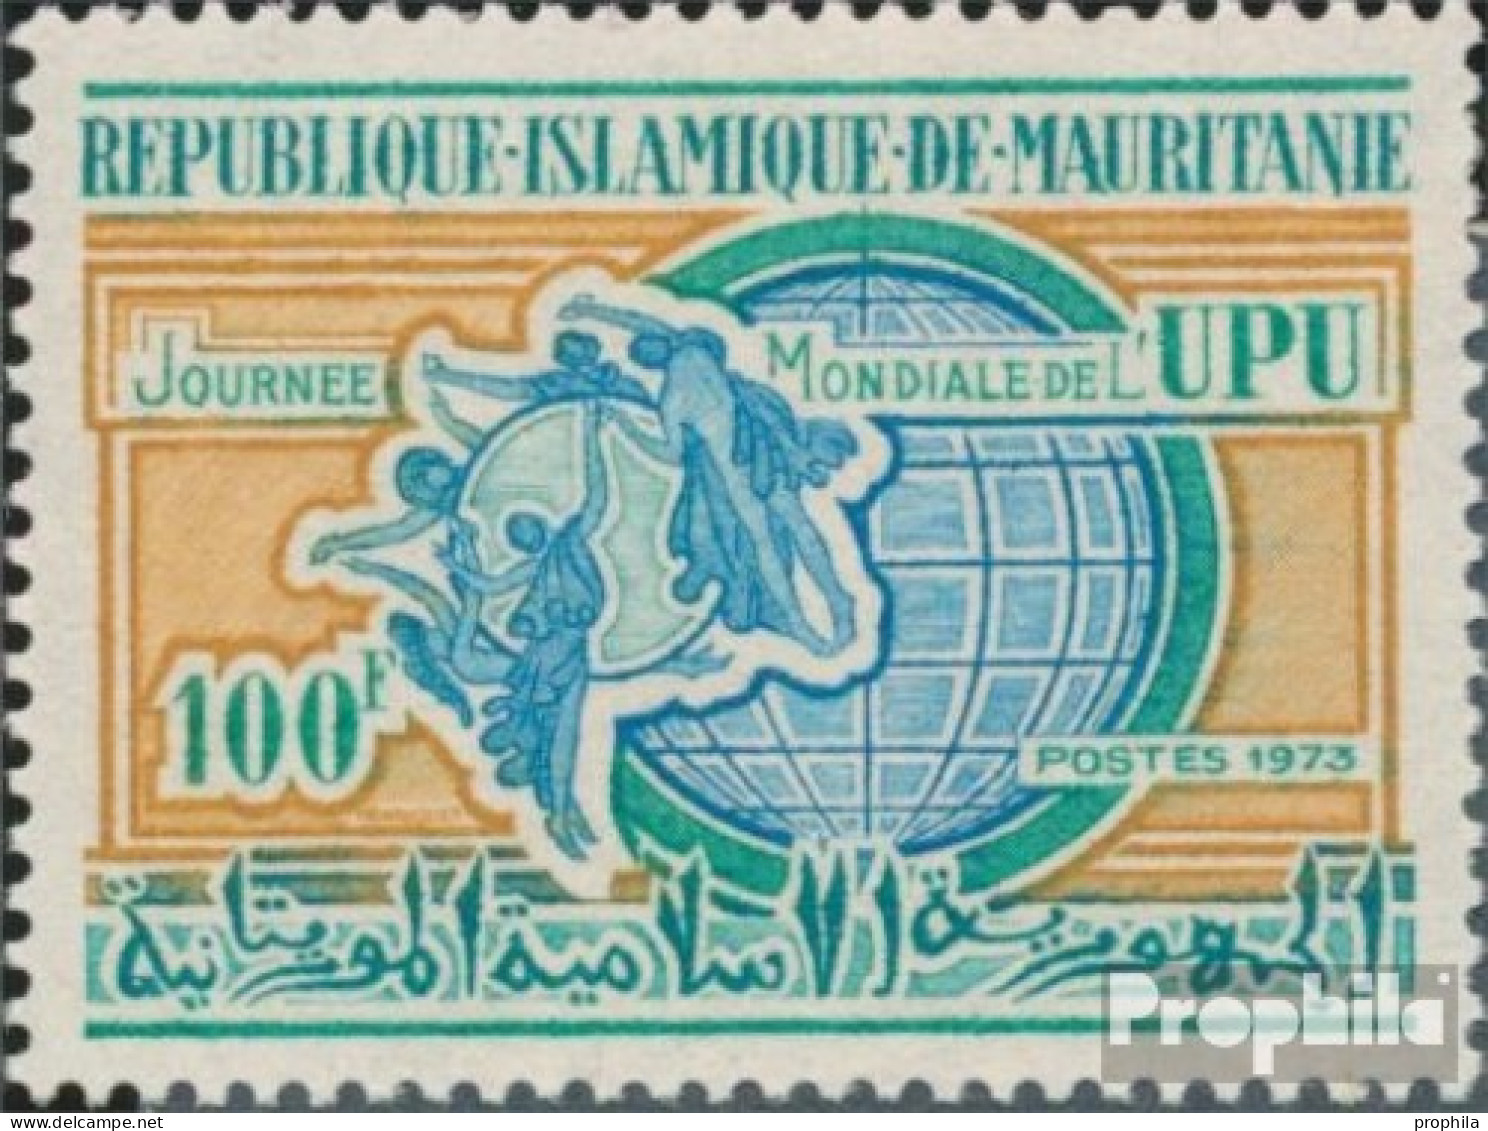 Mauretanien 455 (kompl.Ausg.) Postfrisch 1973 Posttag - Mauretanien (1960-...)